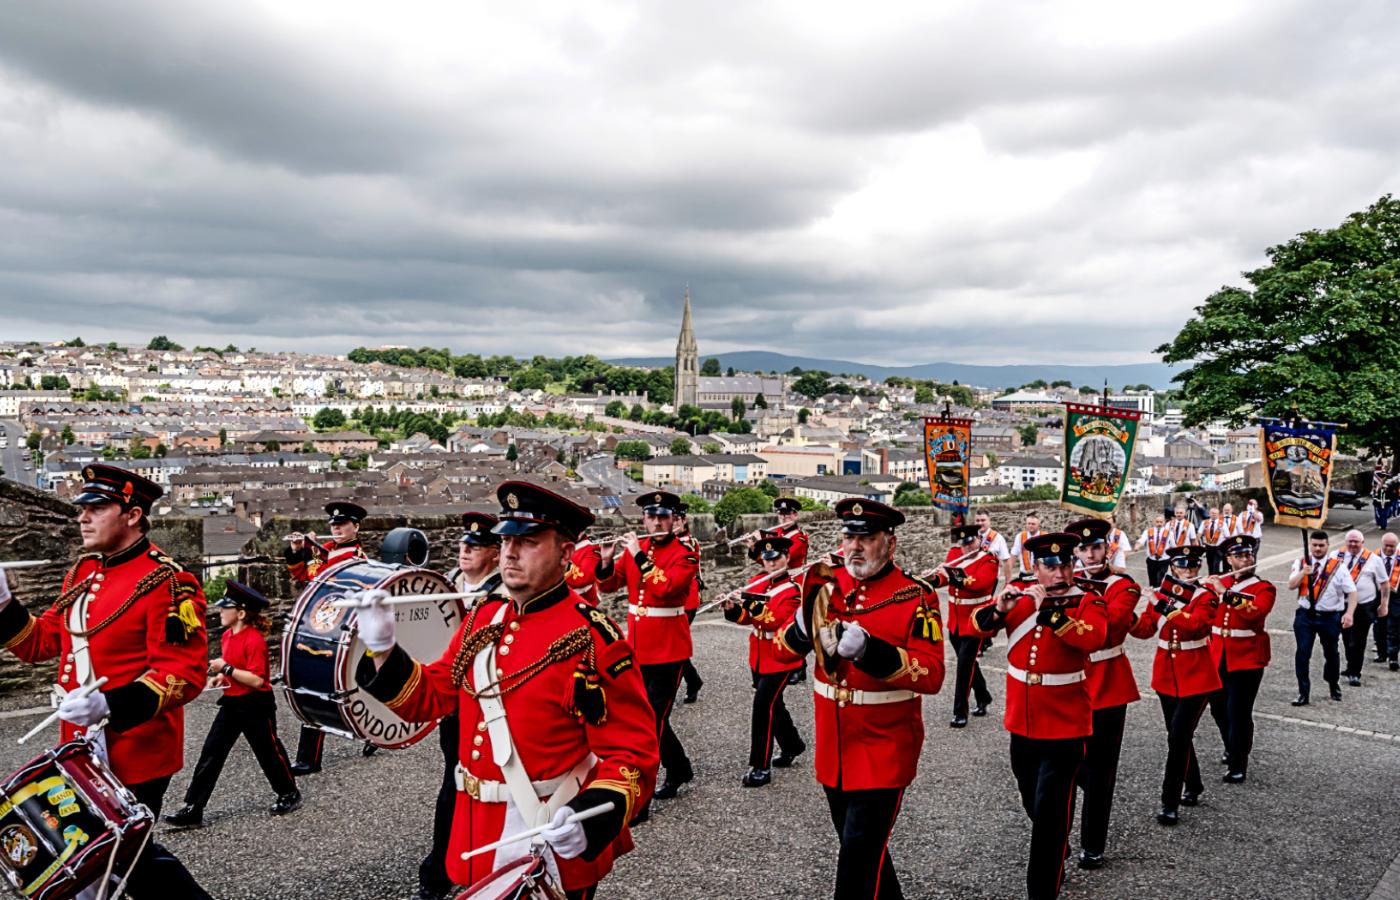 Derry/Londonderry, Irlandia Północna. Lojaliści paradują z okazji 12 lipca. Tego dnia w 1690 r. protestancki król William odniósł zwycięstwo nad katolickim królem Jamesem w bitwie pod Boyne.